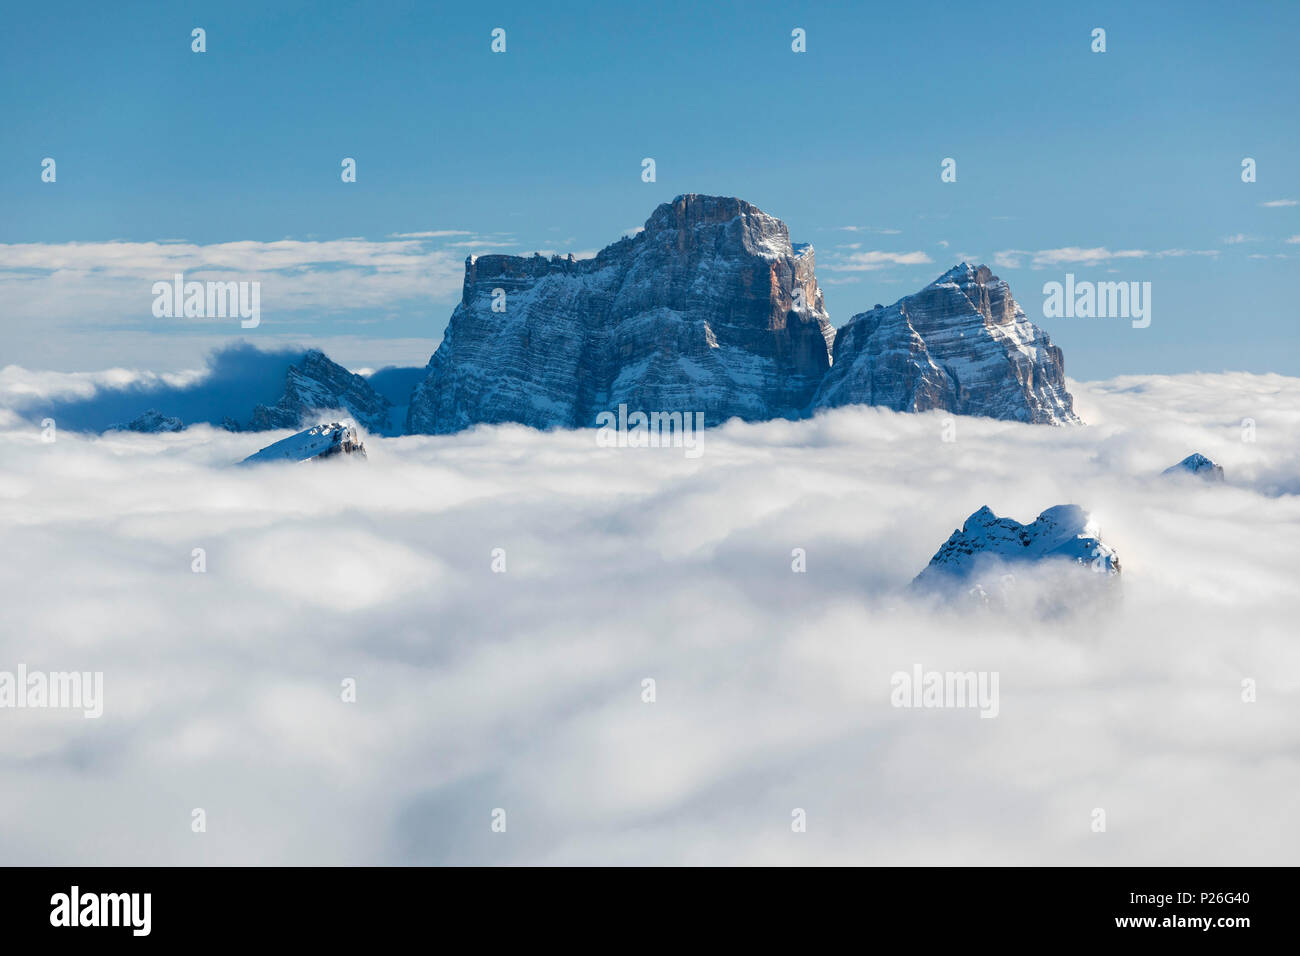 Monte Pelmo above the clouds, view from Lagazuoi. Cortina d'Ampezzo, Belluno province, Veneto, Italy. Stock Photo